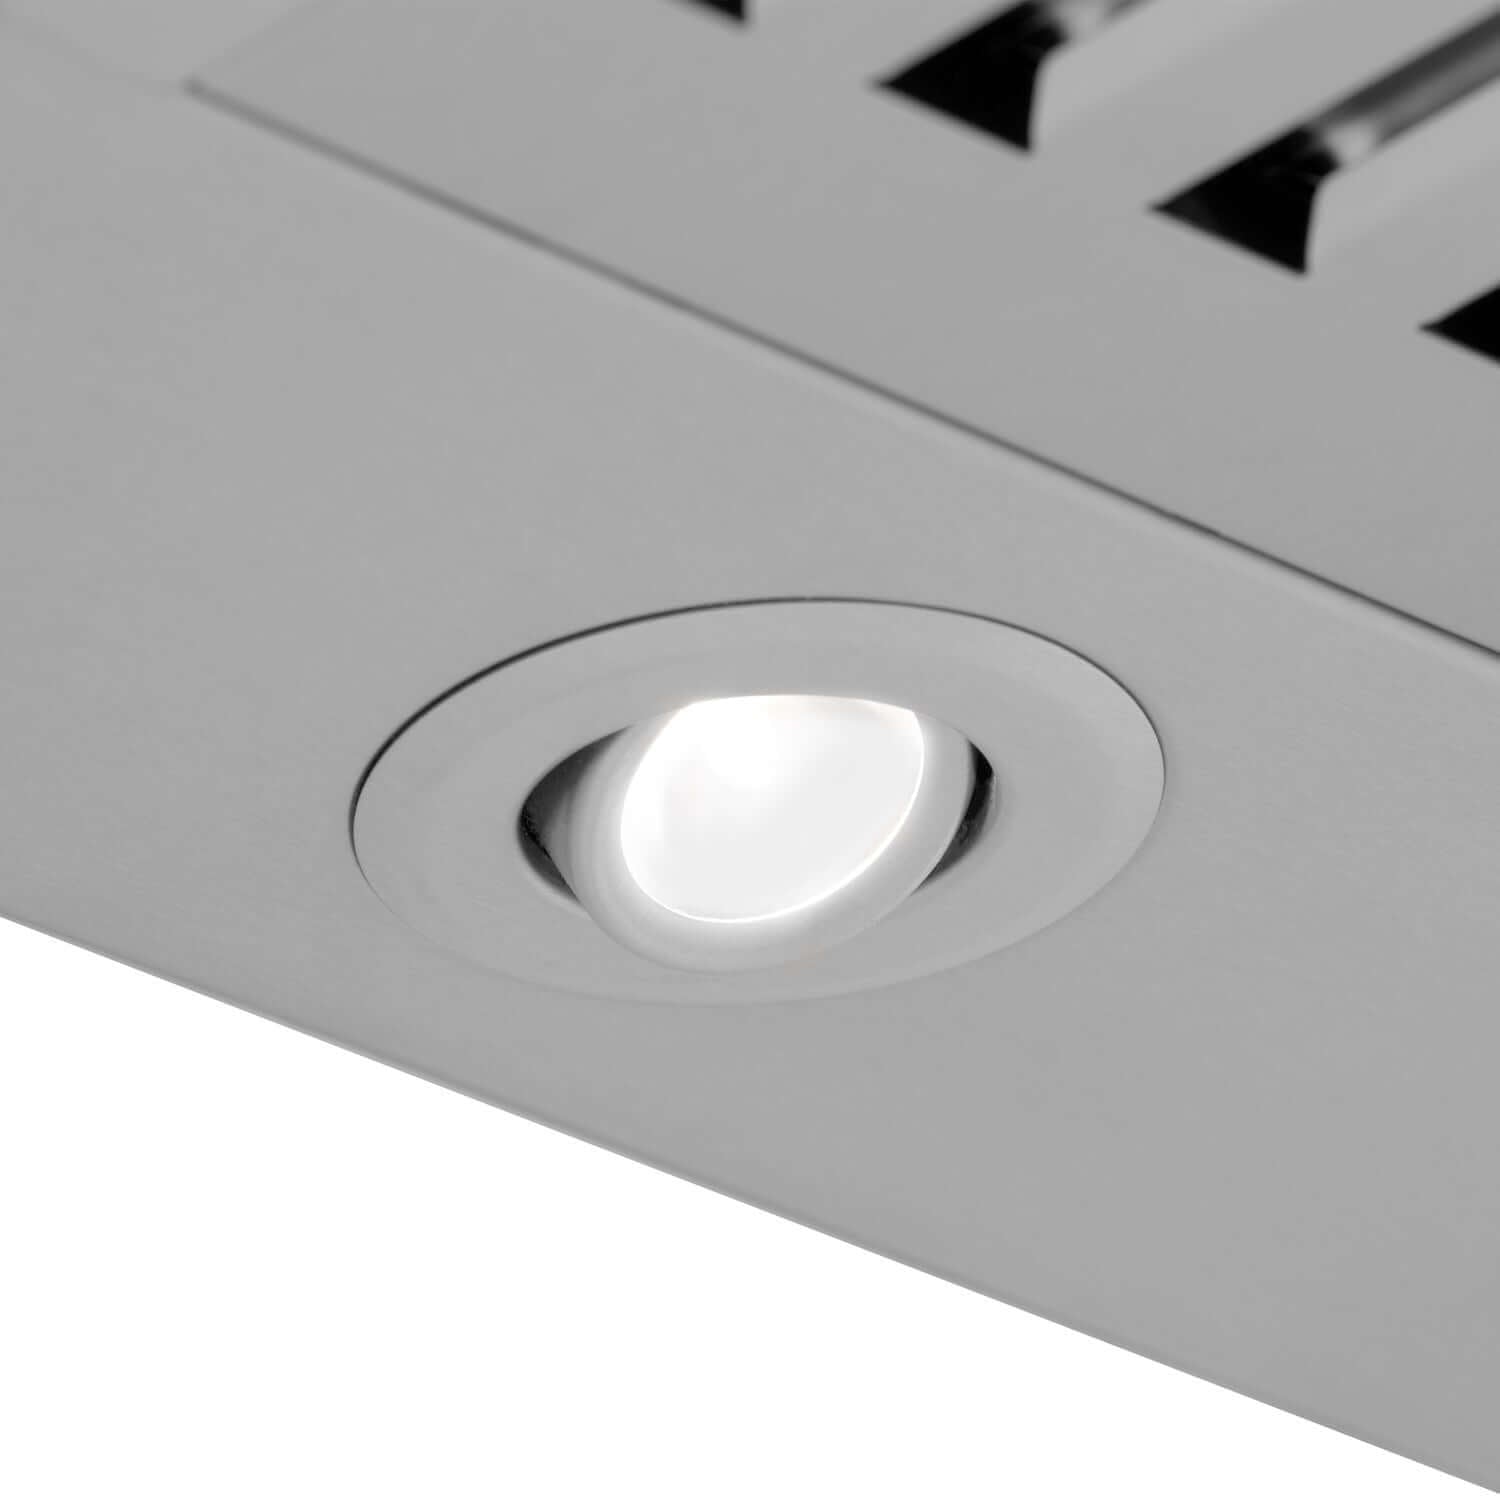 Built-in LED lighting on ZLINE Stainless Steel Convertible Vent Range Hood.